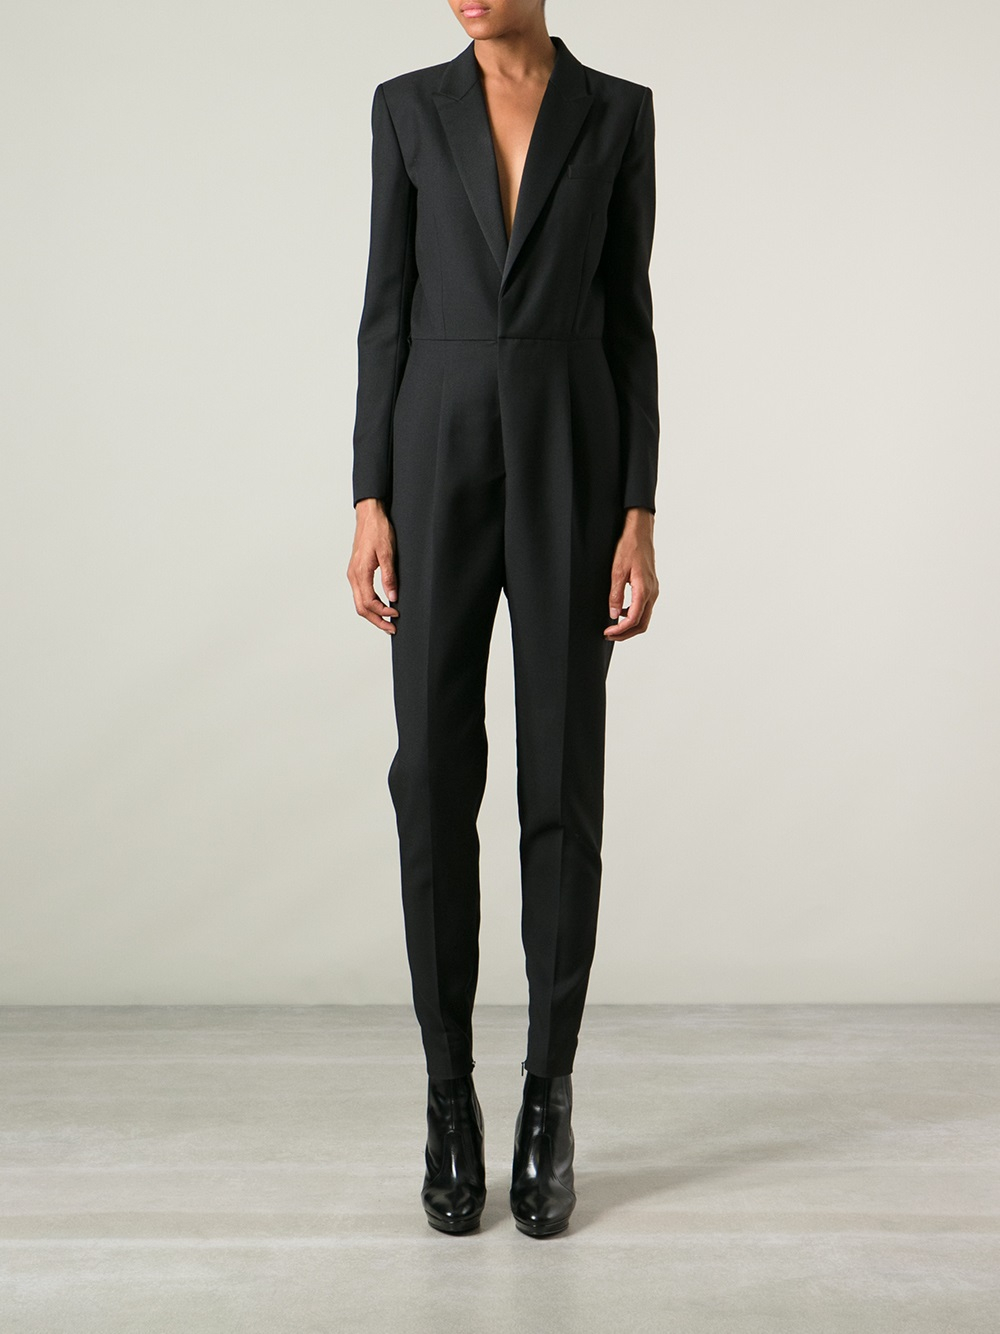 Saint Laurent Tuxedo Style Jumpsuit in Black | Lyst